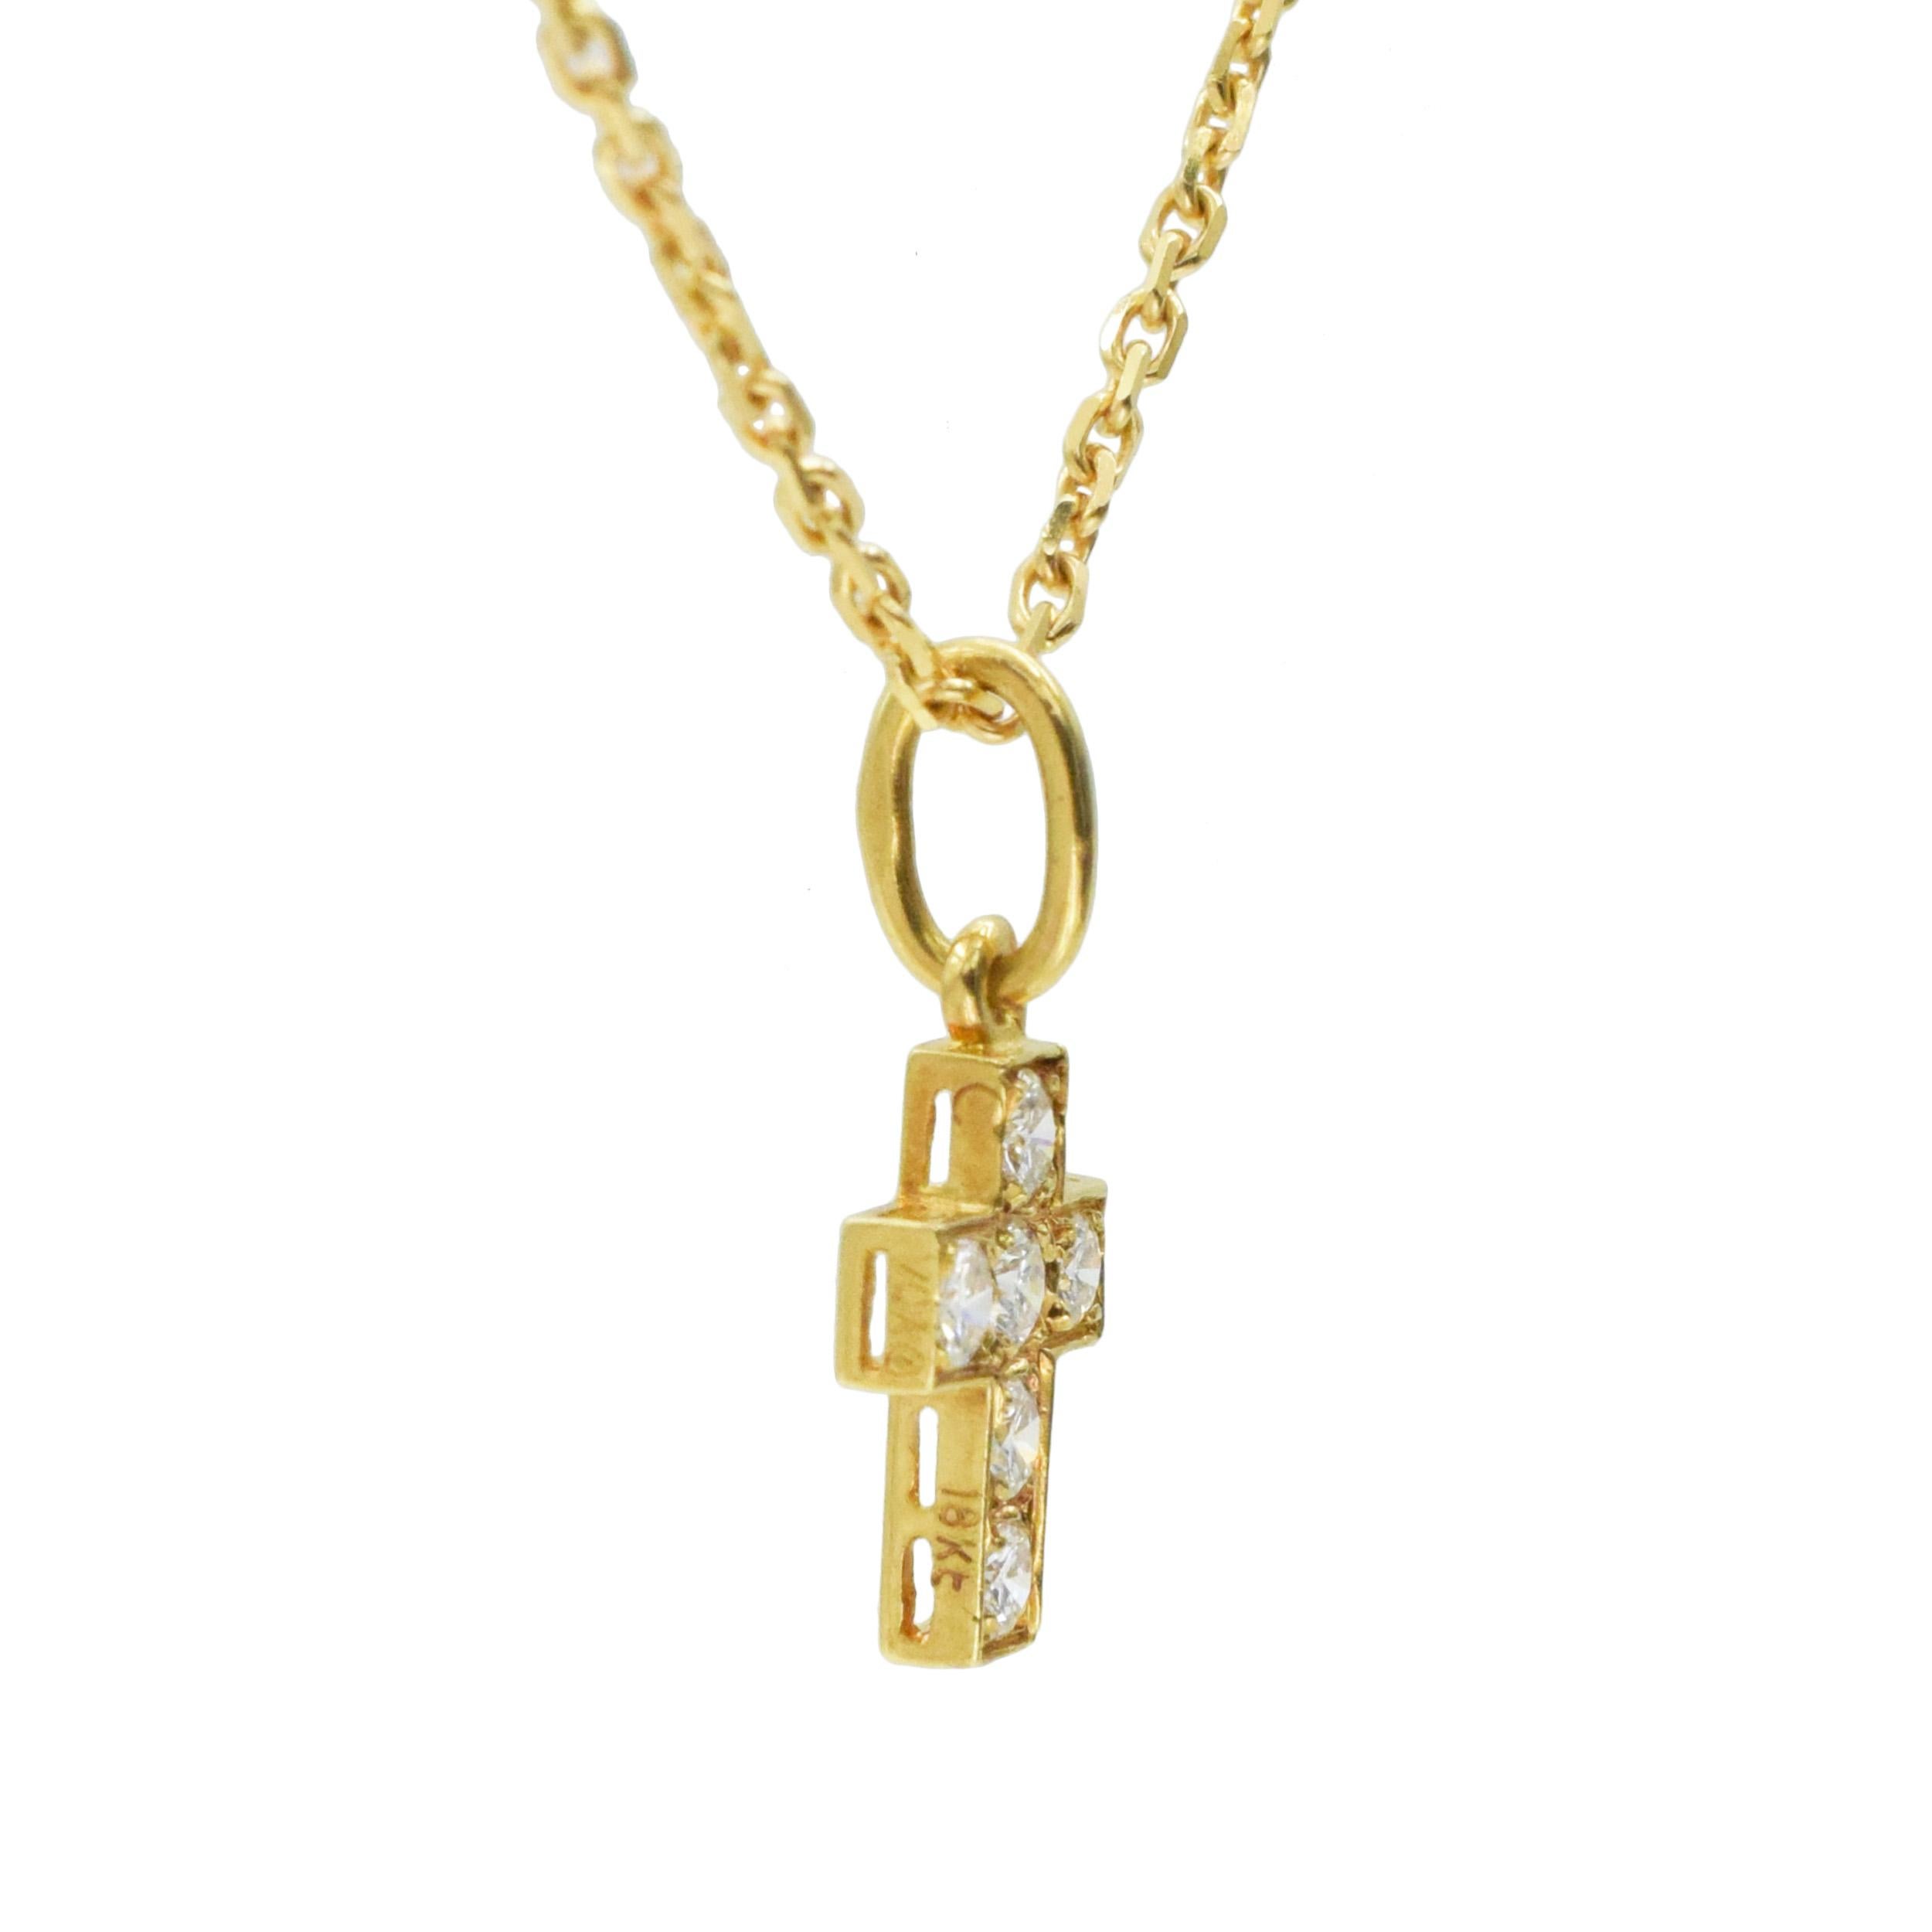 Women's or Men's Van Cleef & Arpels Diamond Cross Pendant/ Necklace in 18k Yellow Gold